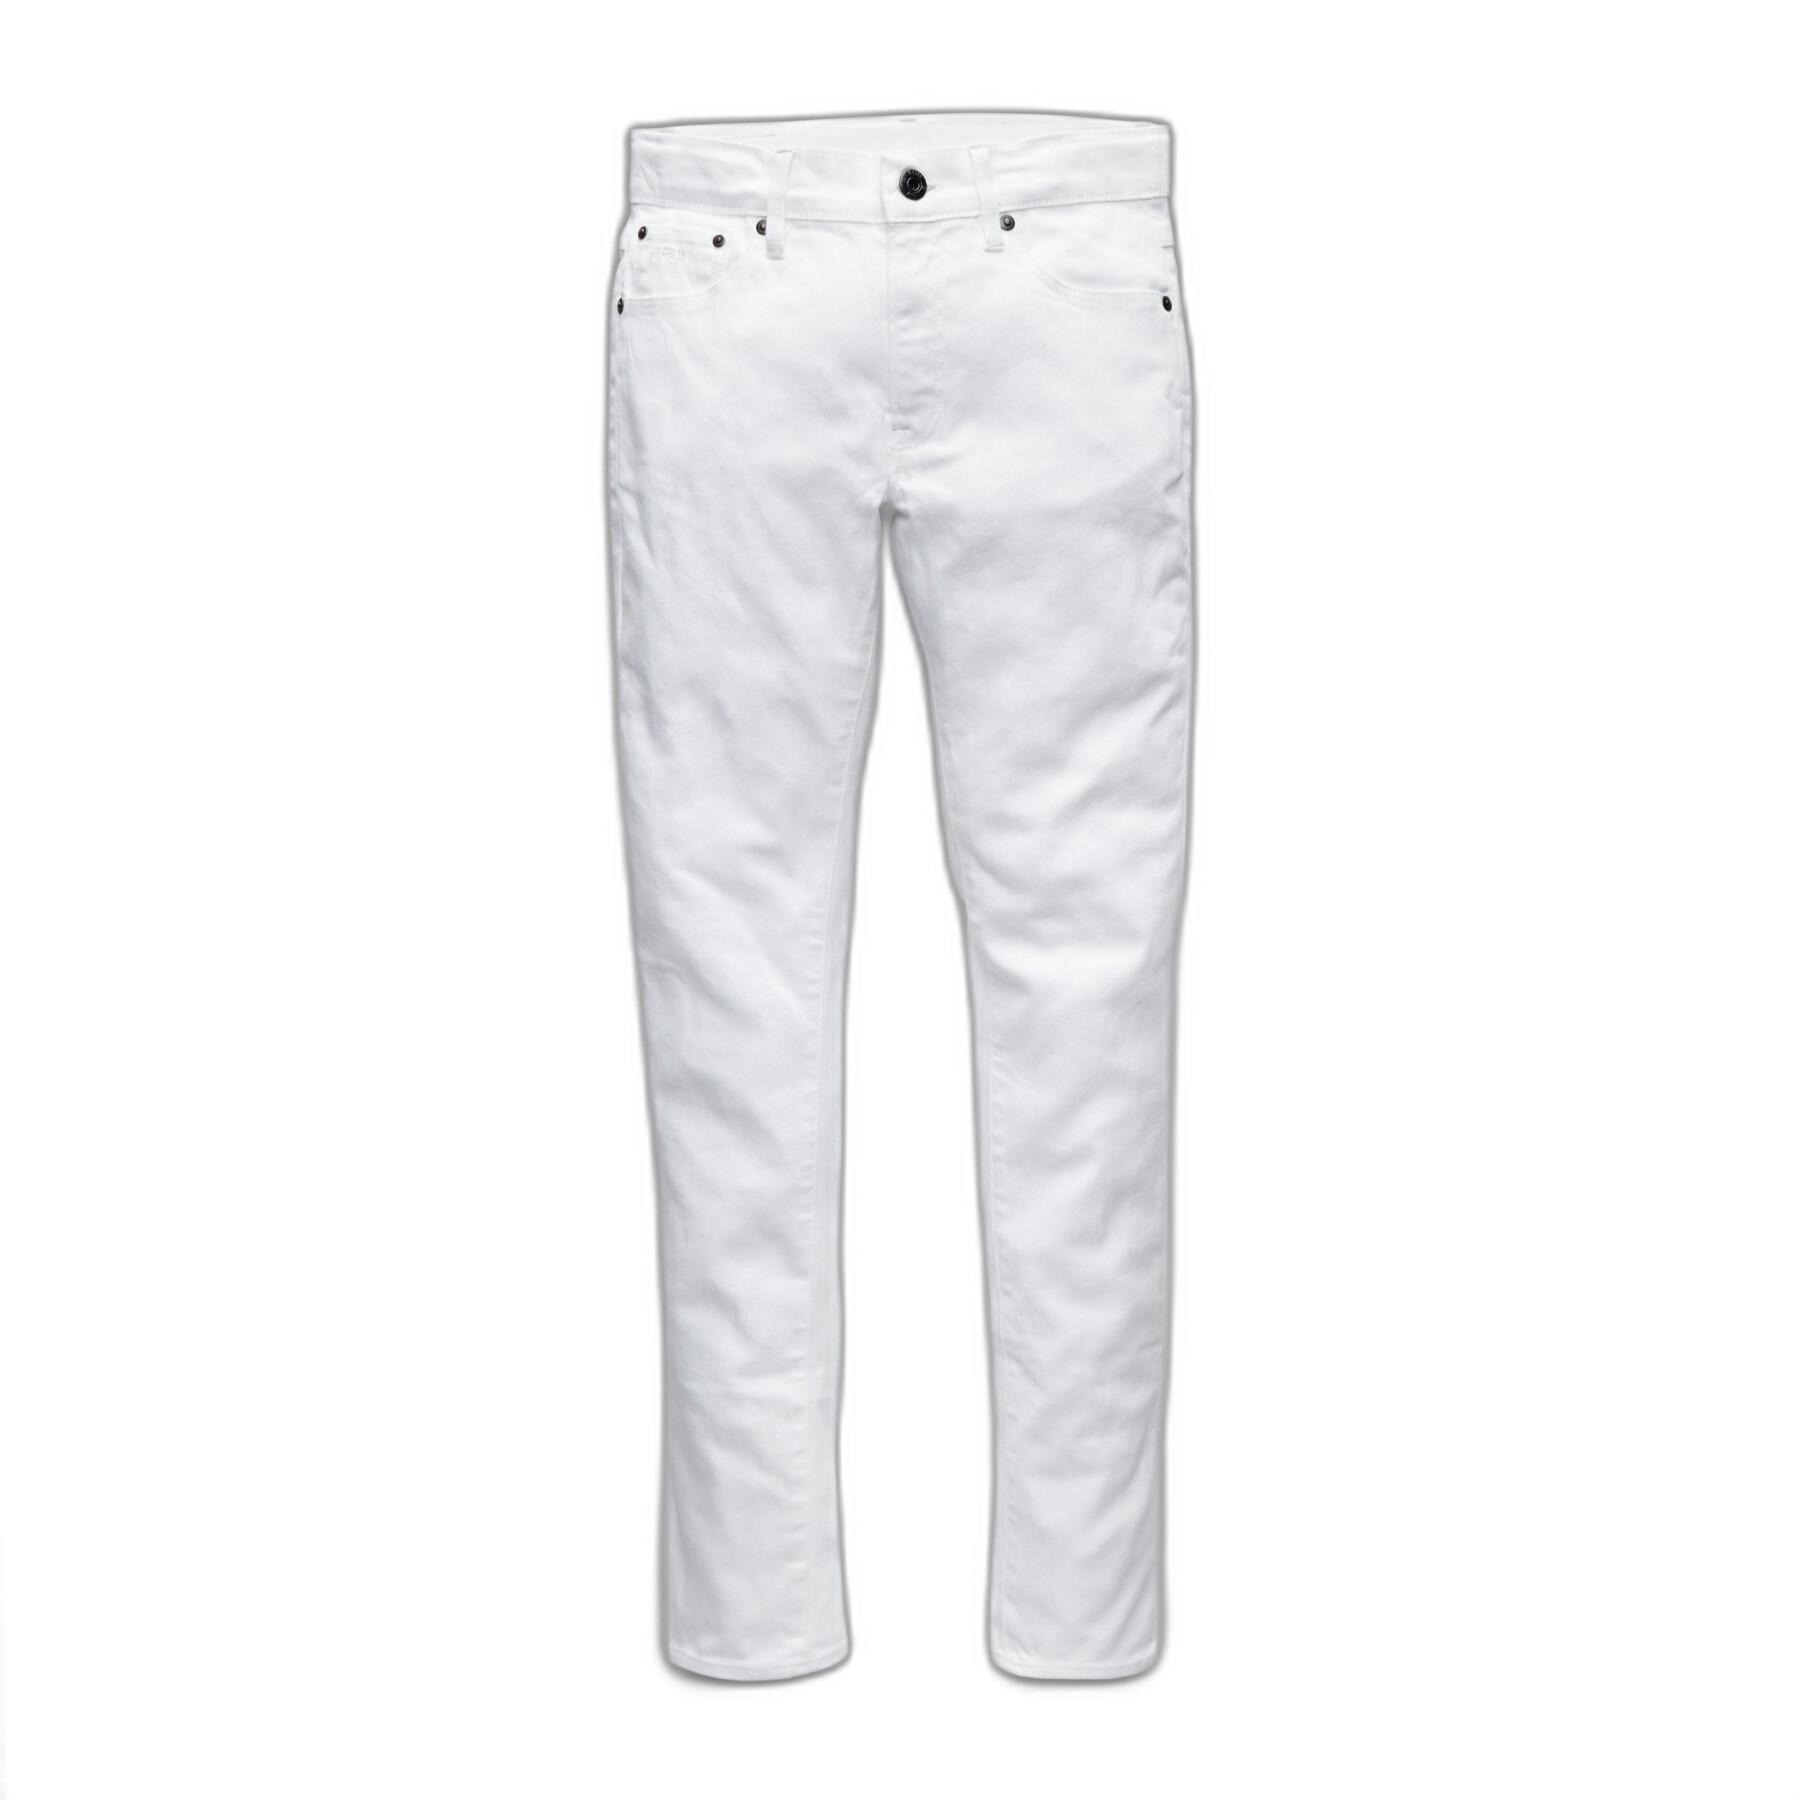 Kids skinny jeans G-Star Ss22157 D-staq